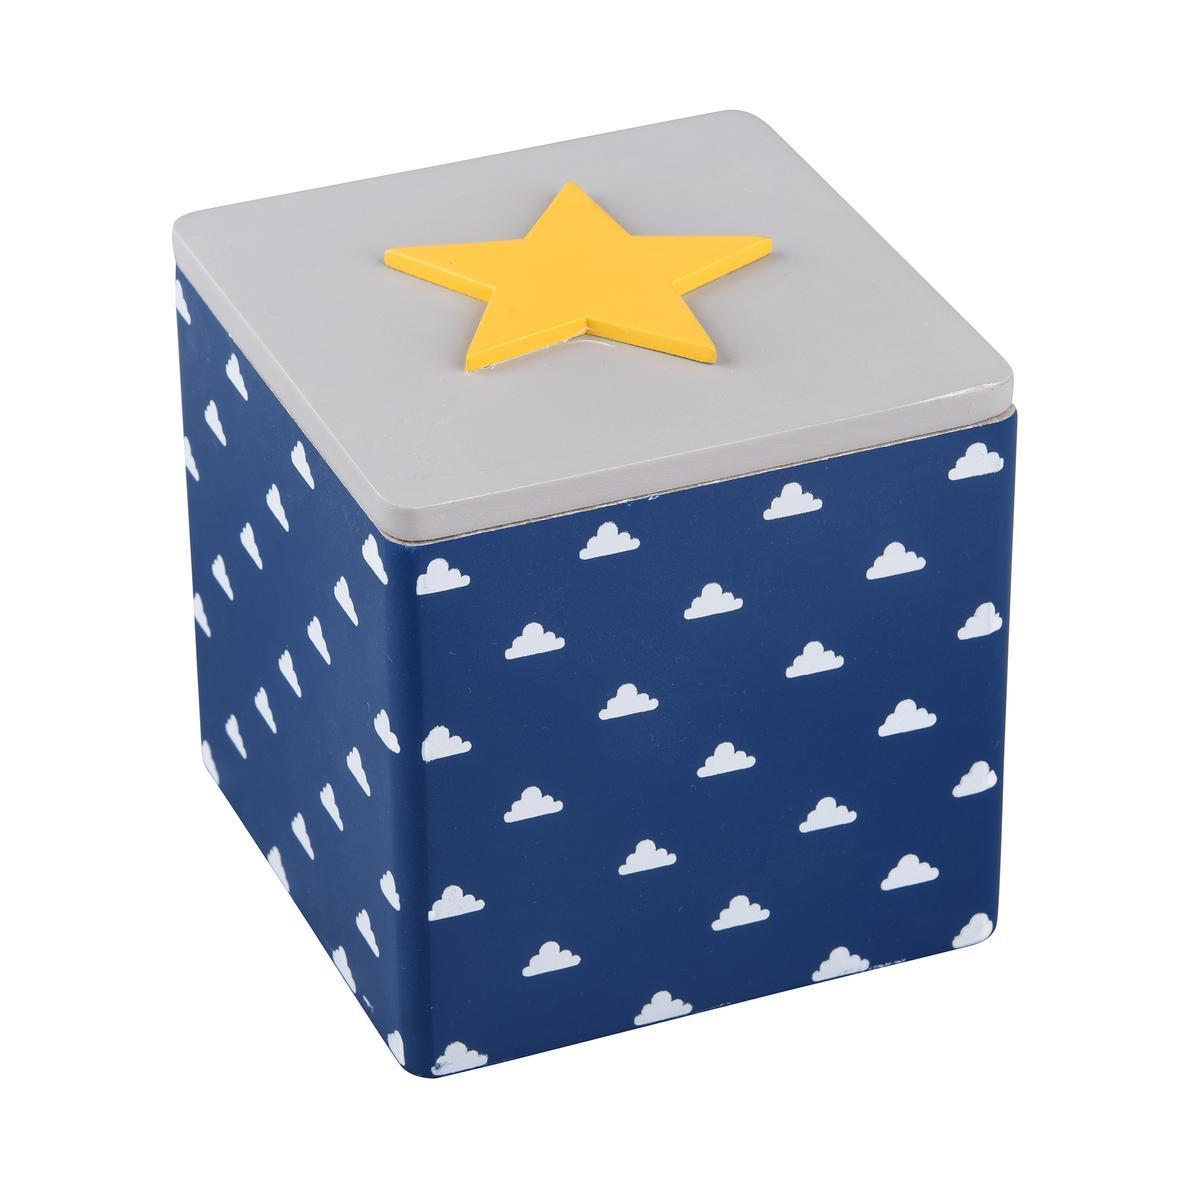 Boîte de rangement pour enfant étoile - 10.2 x 11.5 x H 10.5 cm - Bleu, jaune, blanc